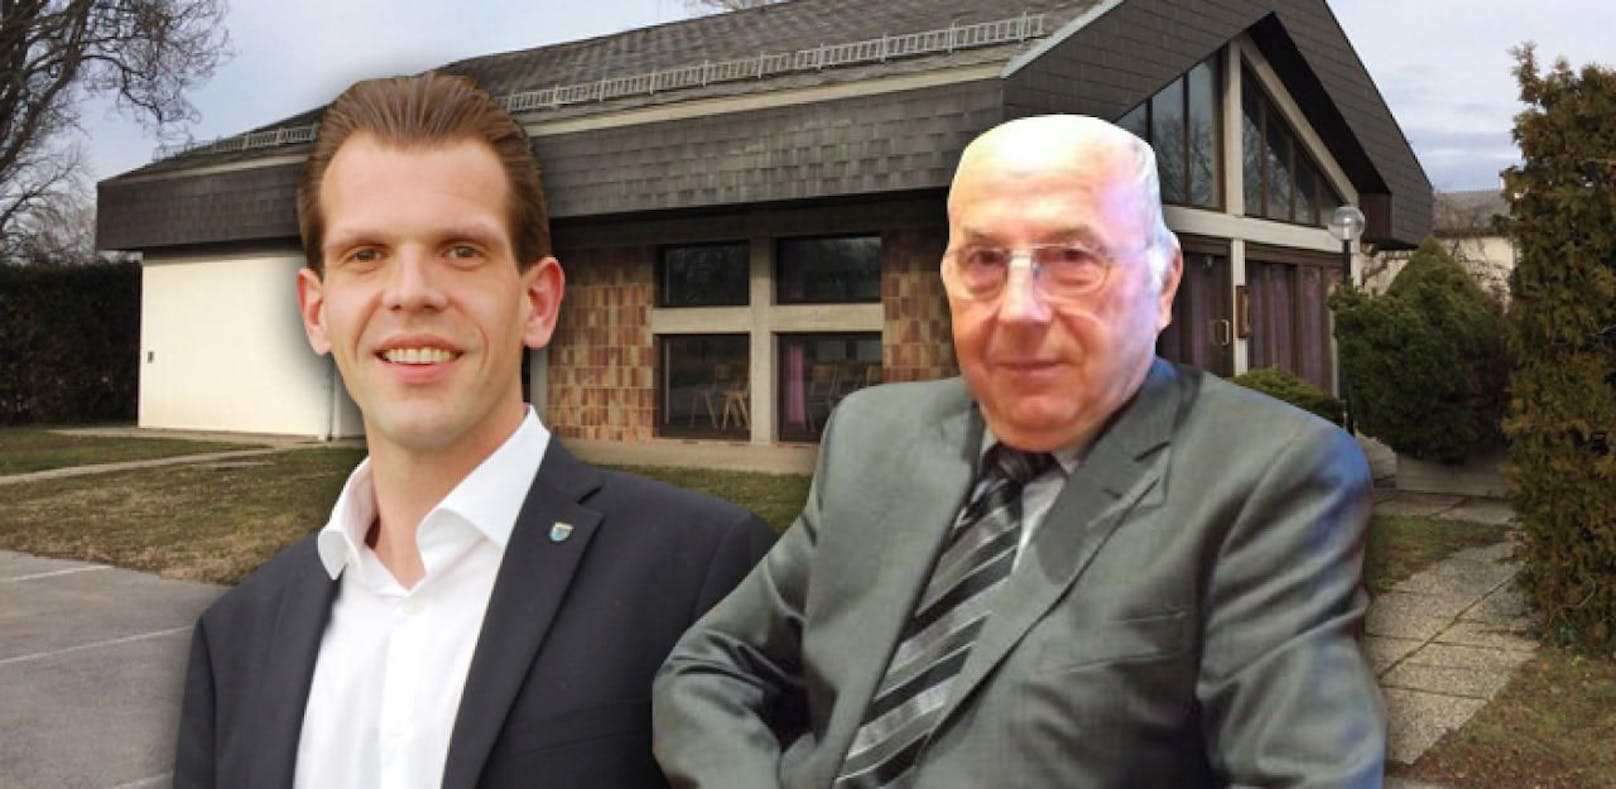 Wut-Mail nach Diskussion um Osliper Leichenhalle - nun spricht Franz Schneider (l.), der von Bürgermeister Stefan Bubich beflegelt wurde.